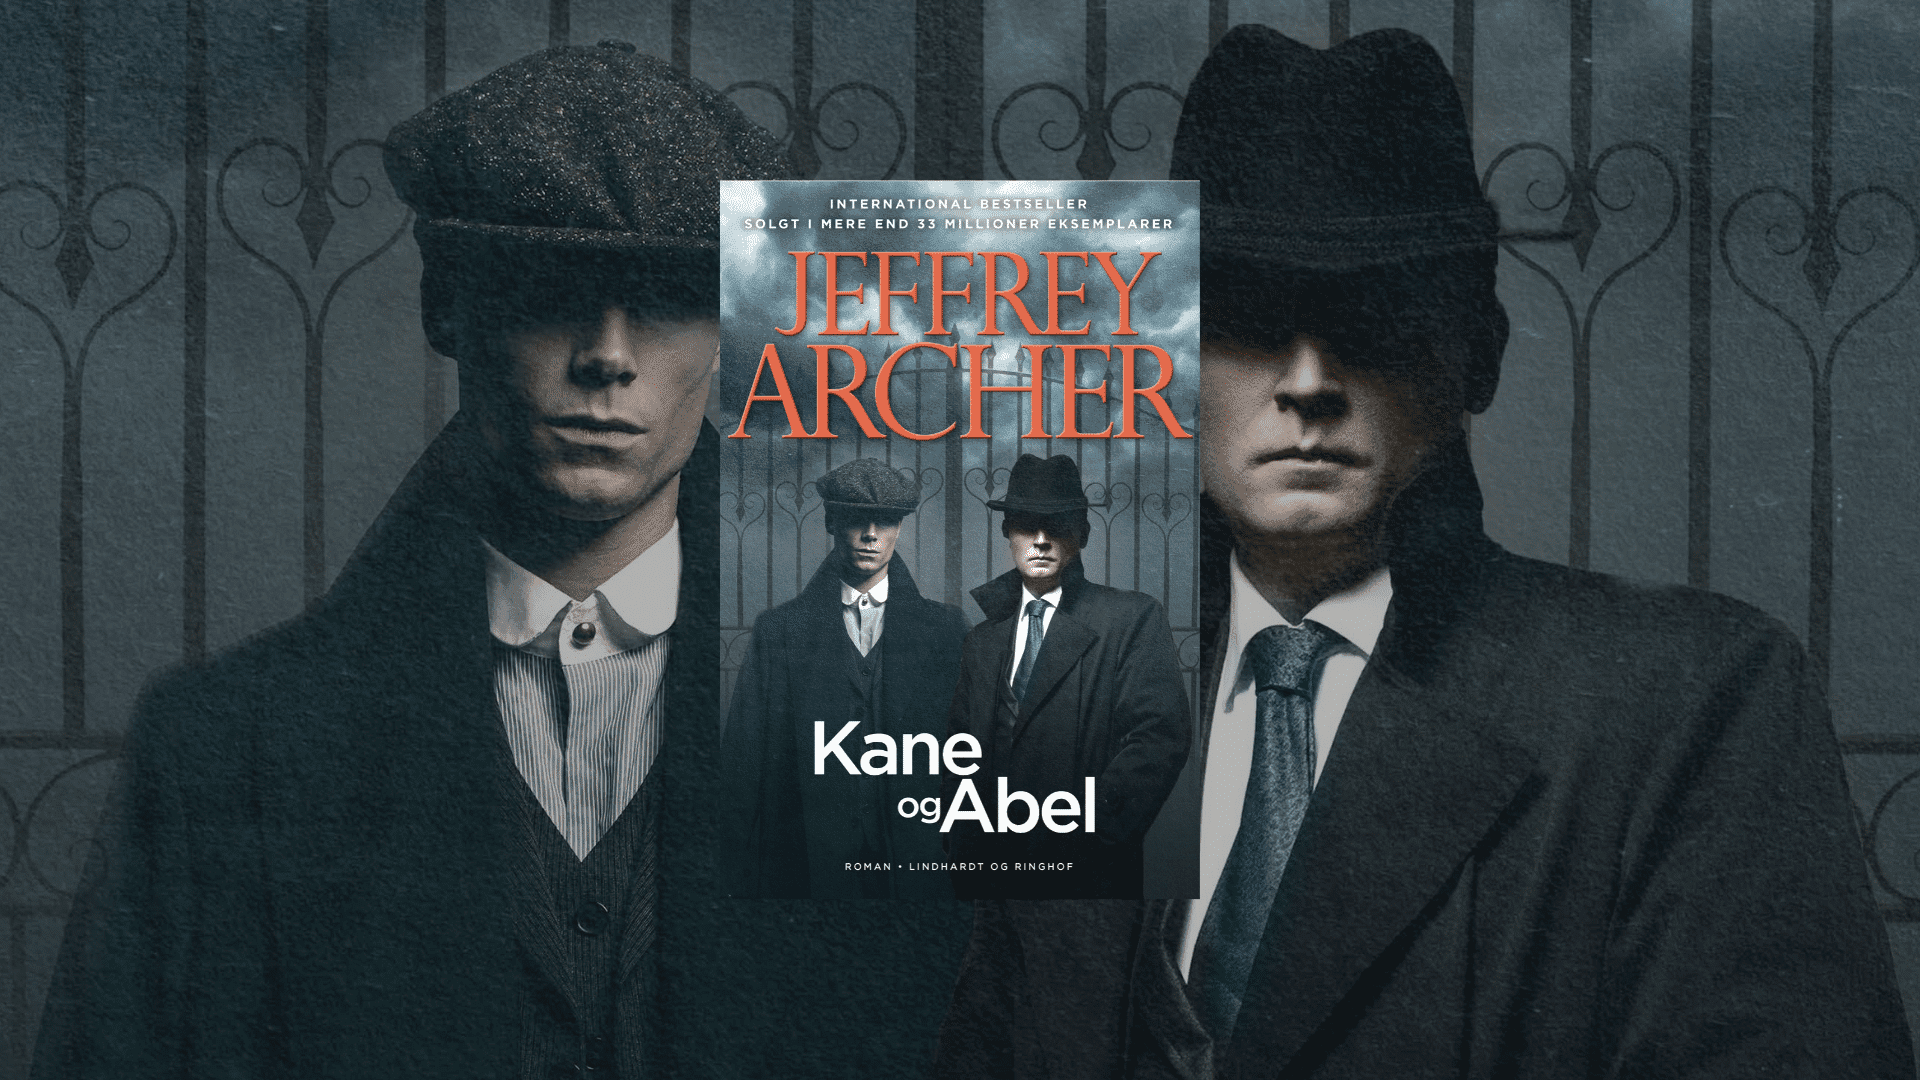 Kane og Abel af Jeffrey Archer